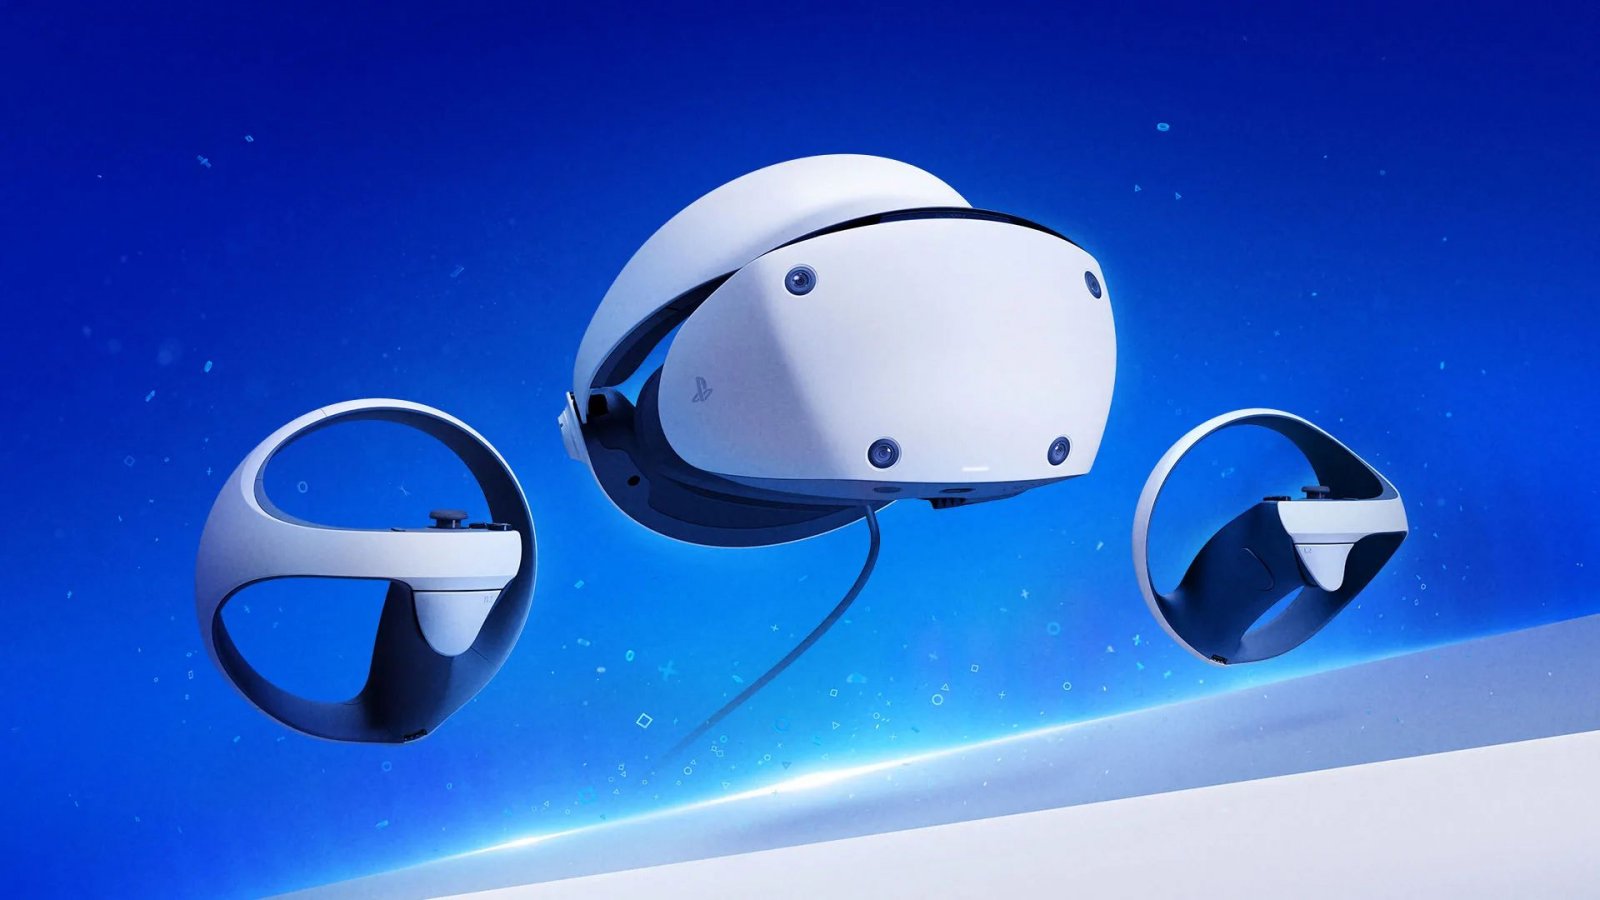 PlayStation VR2 ha buone chance di vendere più del precedente visore, secondo Sony